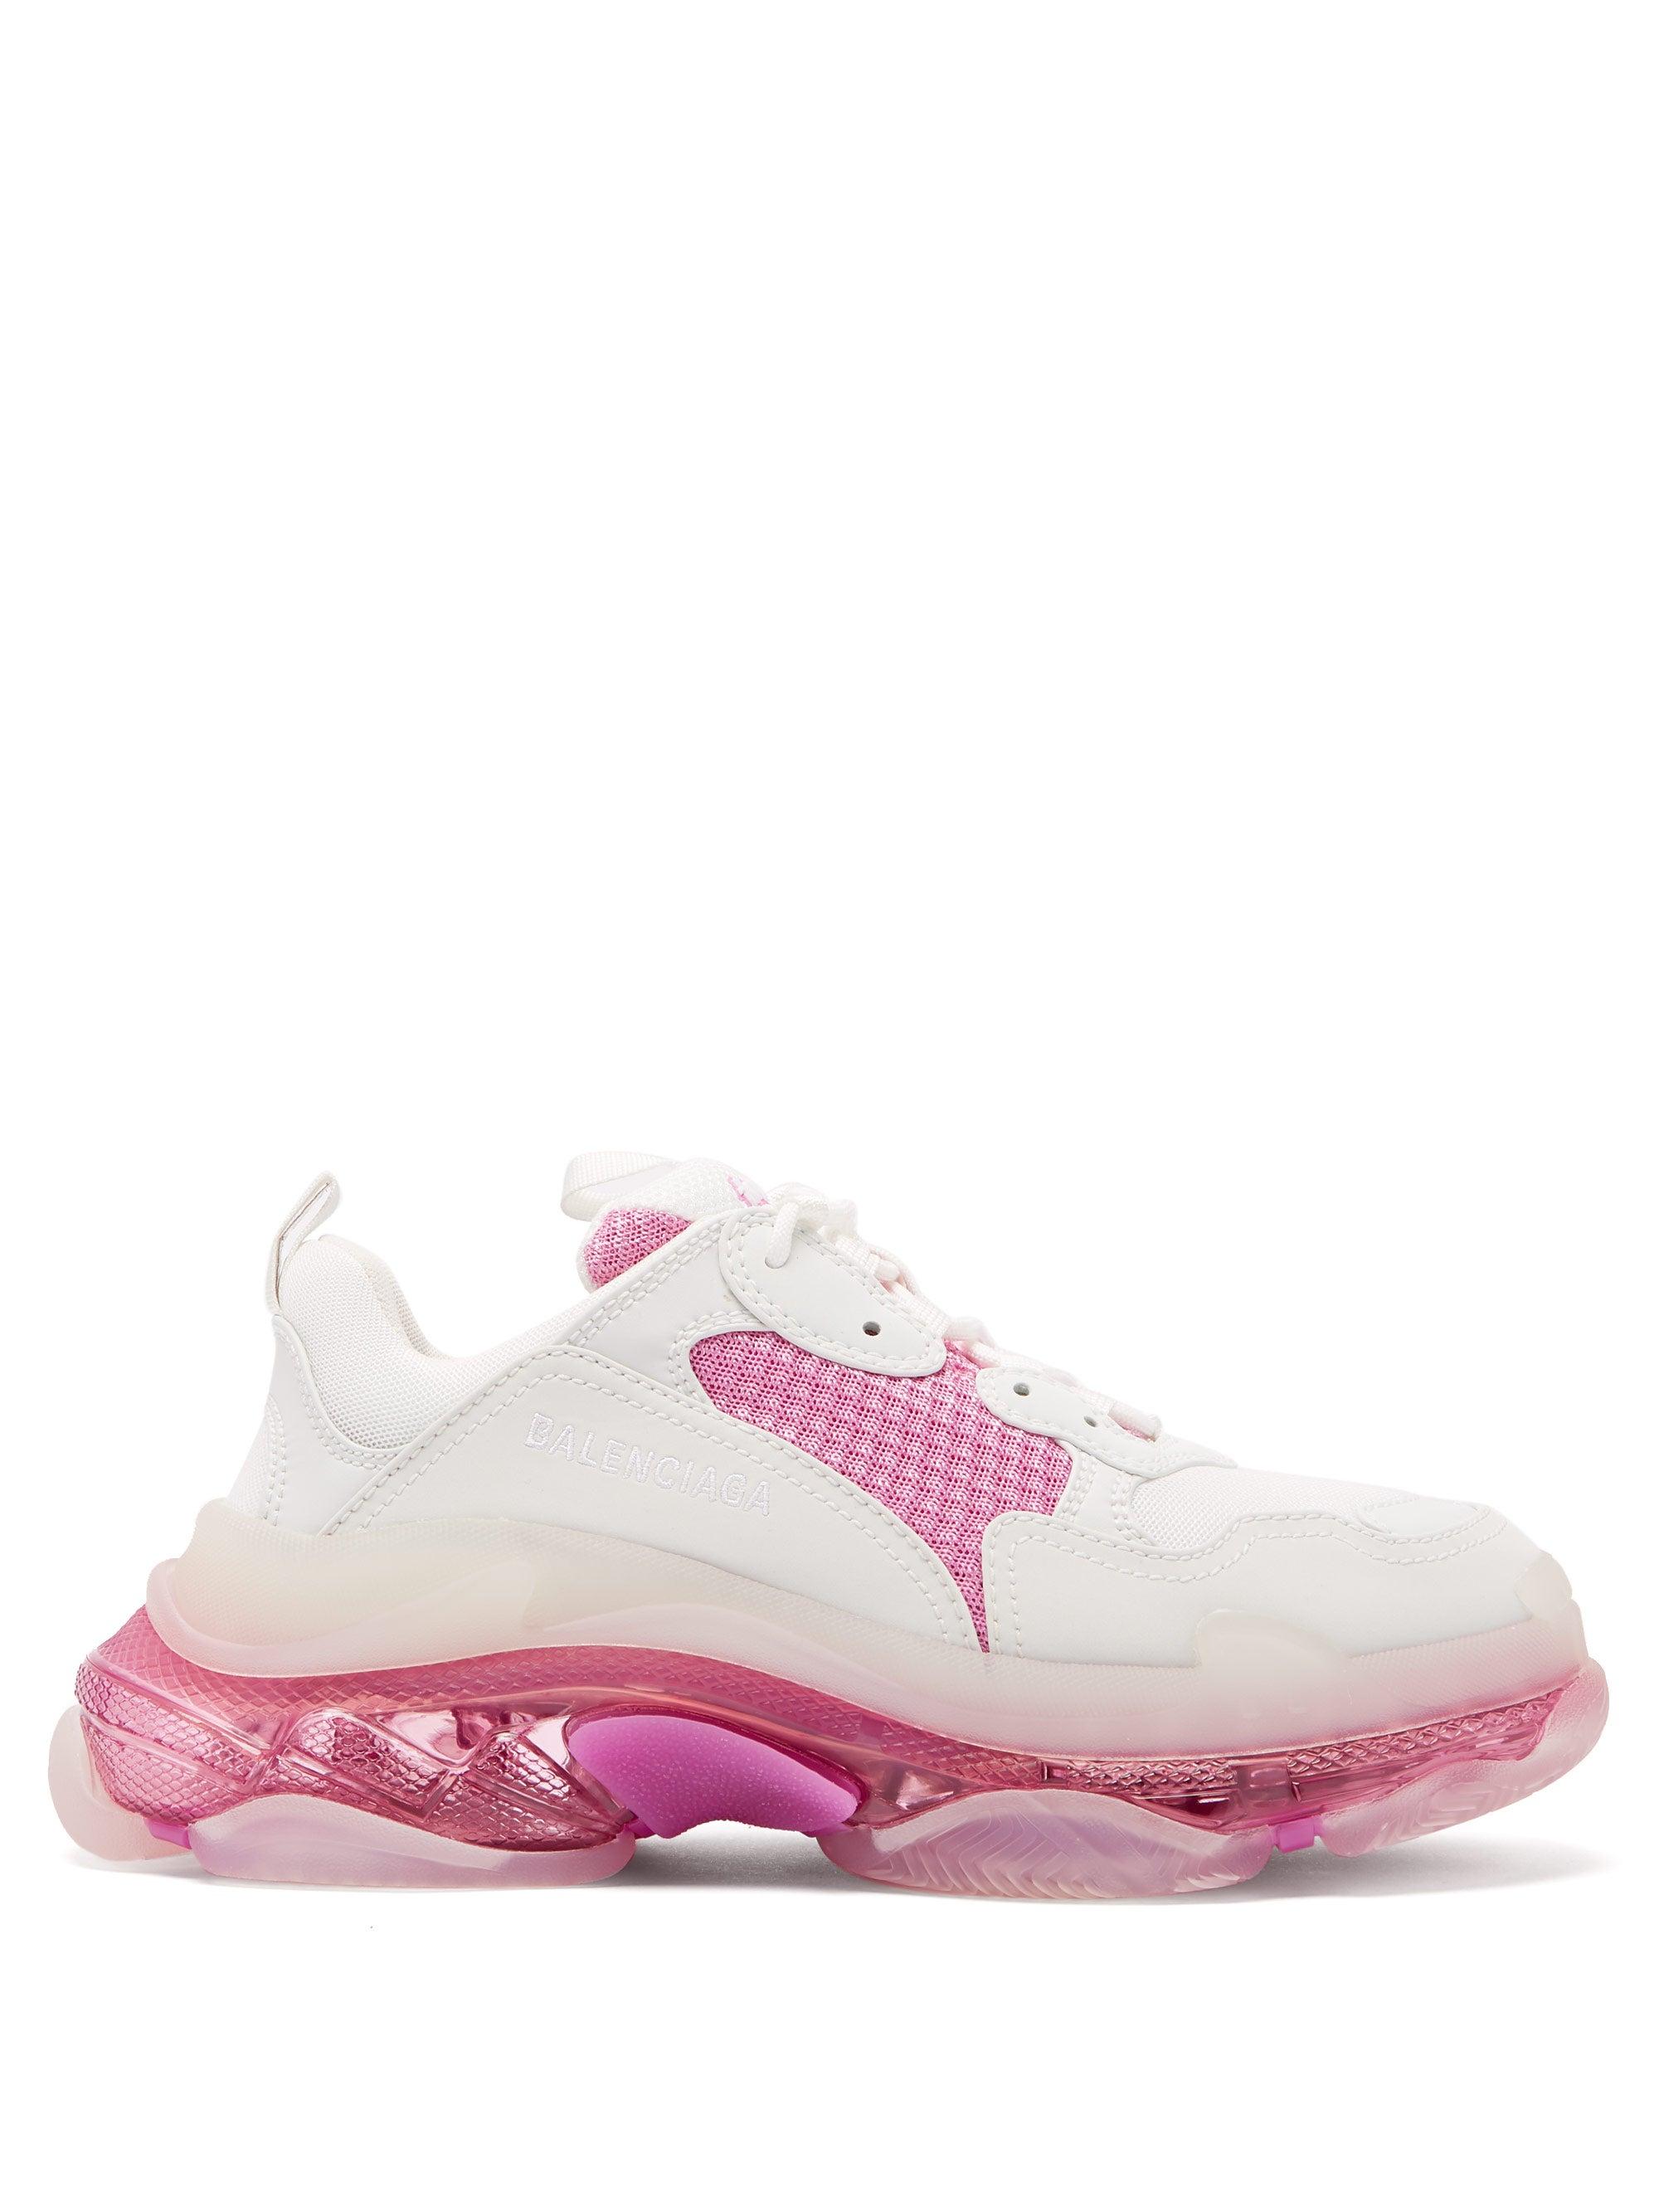 Balenciaga Triple S Clear Sole Sneaker in Pink | Lyst